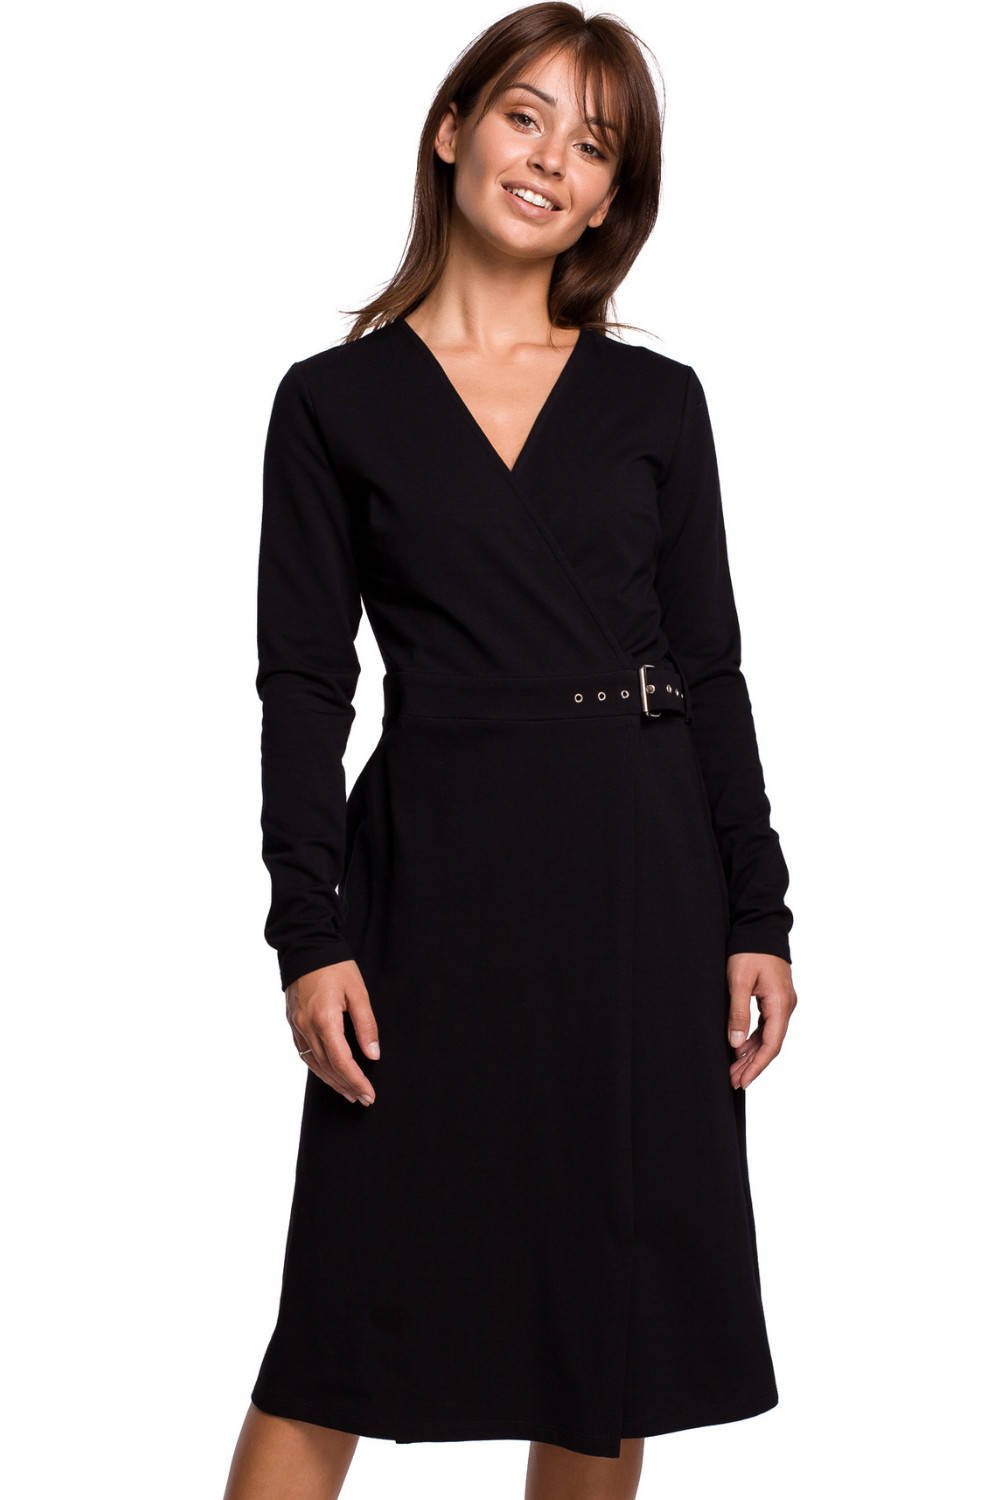 Kopertowa sukienka dzianinowa midi ciepła bawełniana czarna M - AllureStore